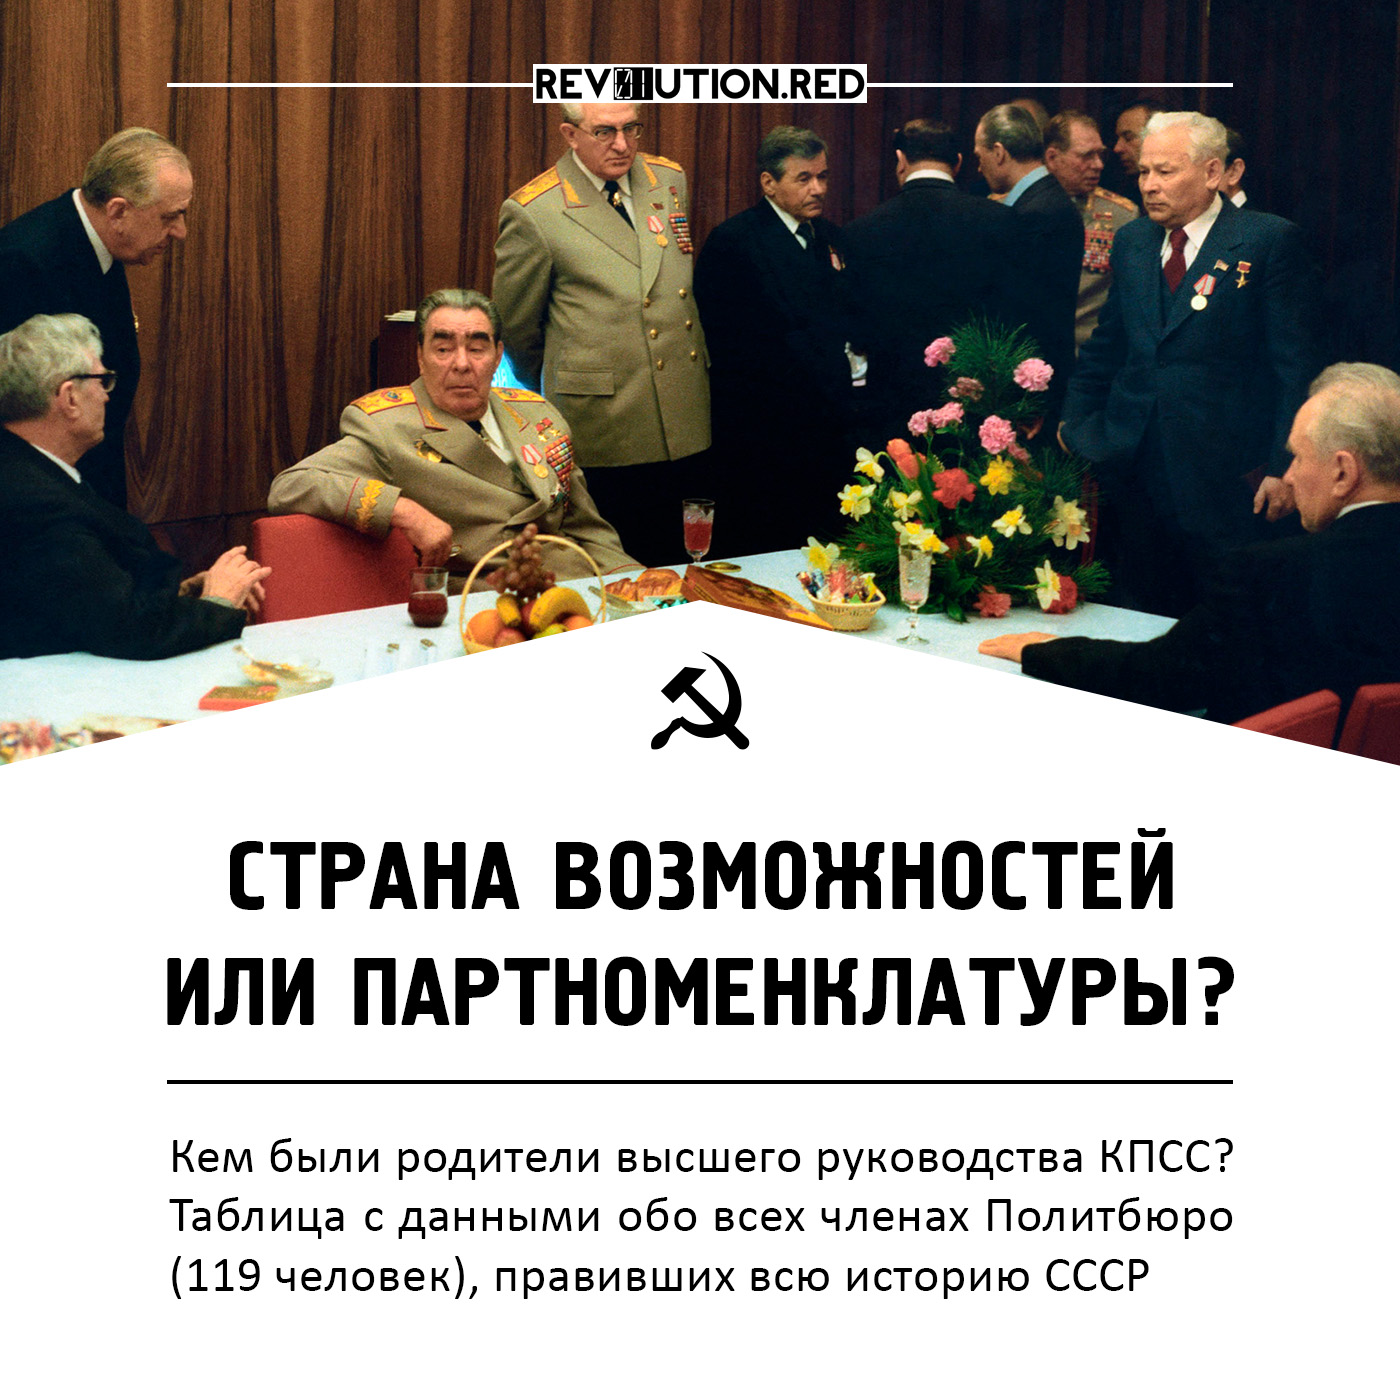 СССР: страна равных возможностей или замкнутой партноменклатуры? | rev01ution.red